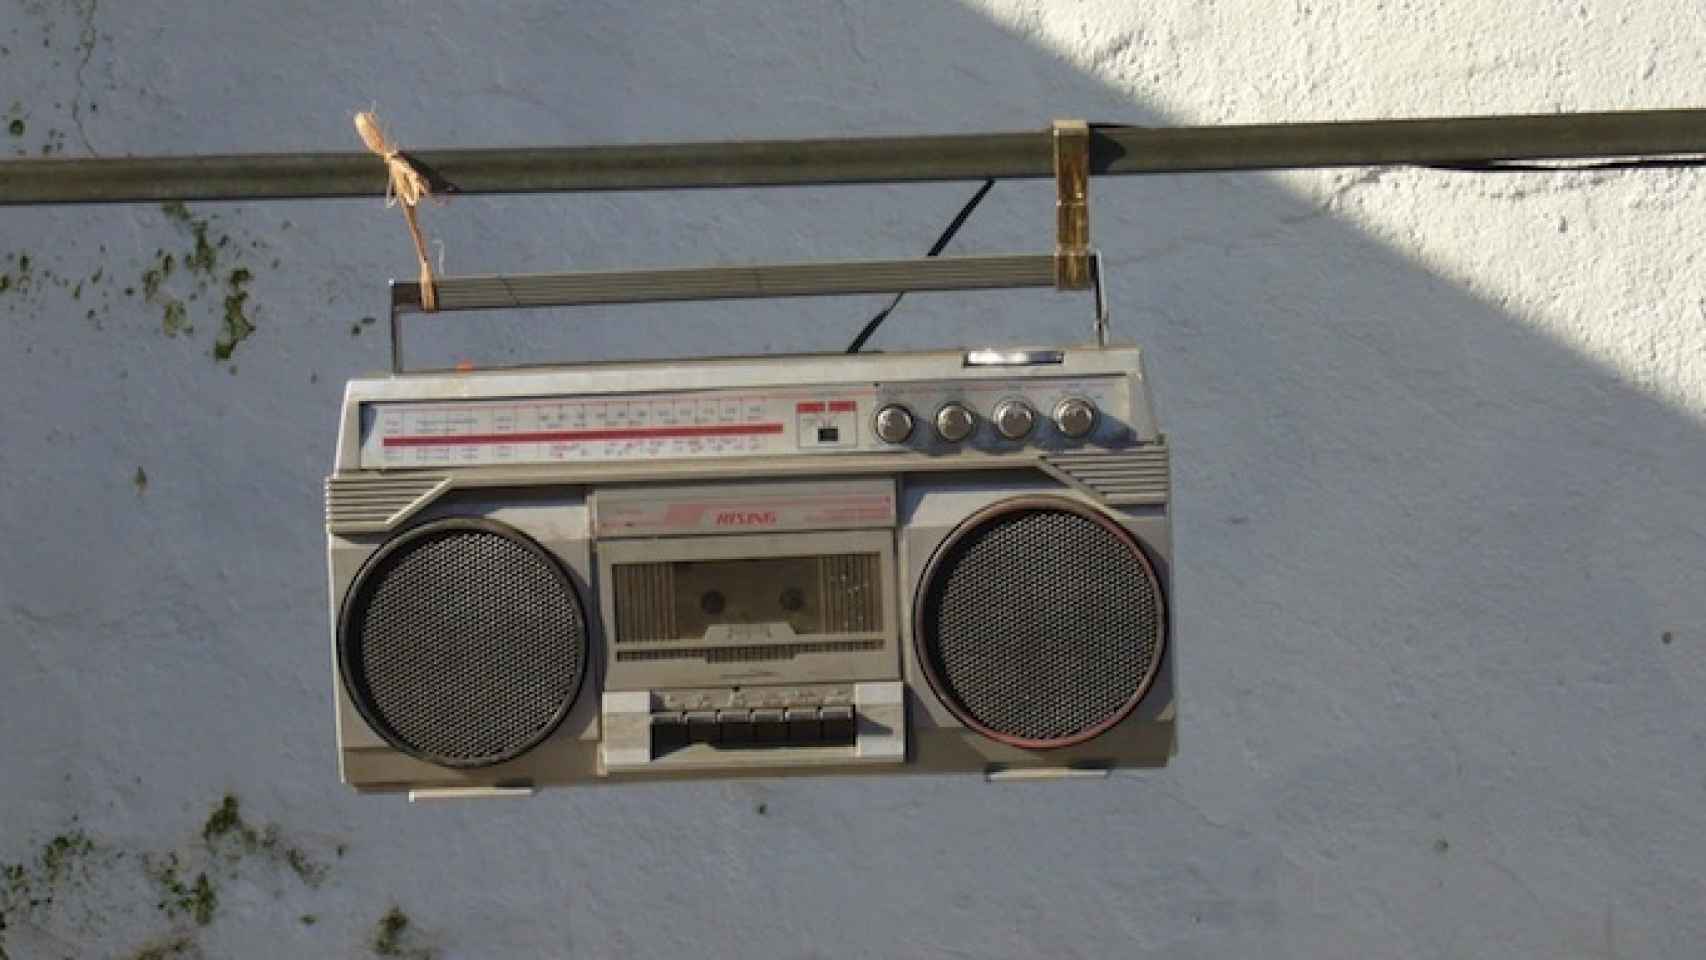 p2p-radiocassette